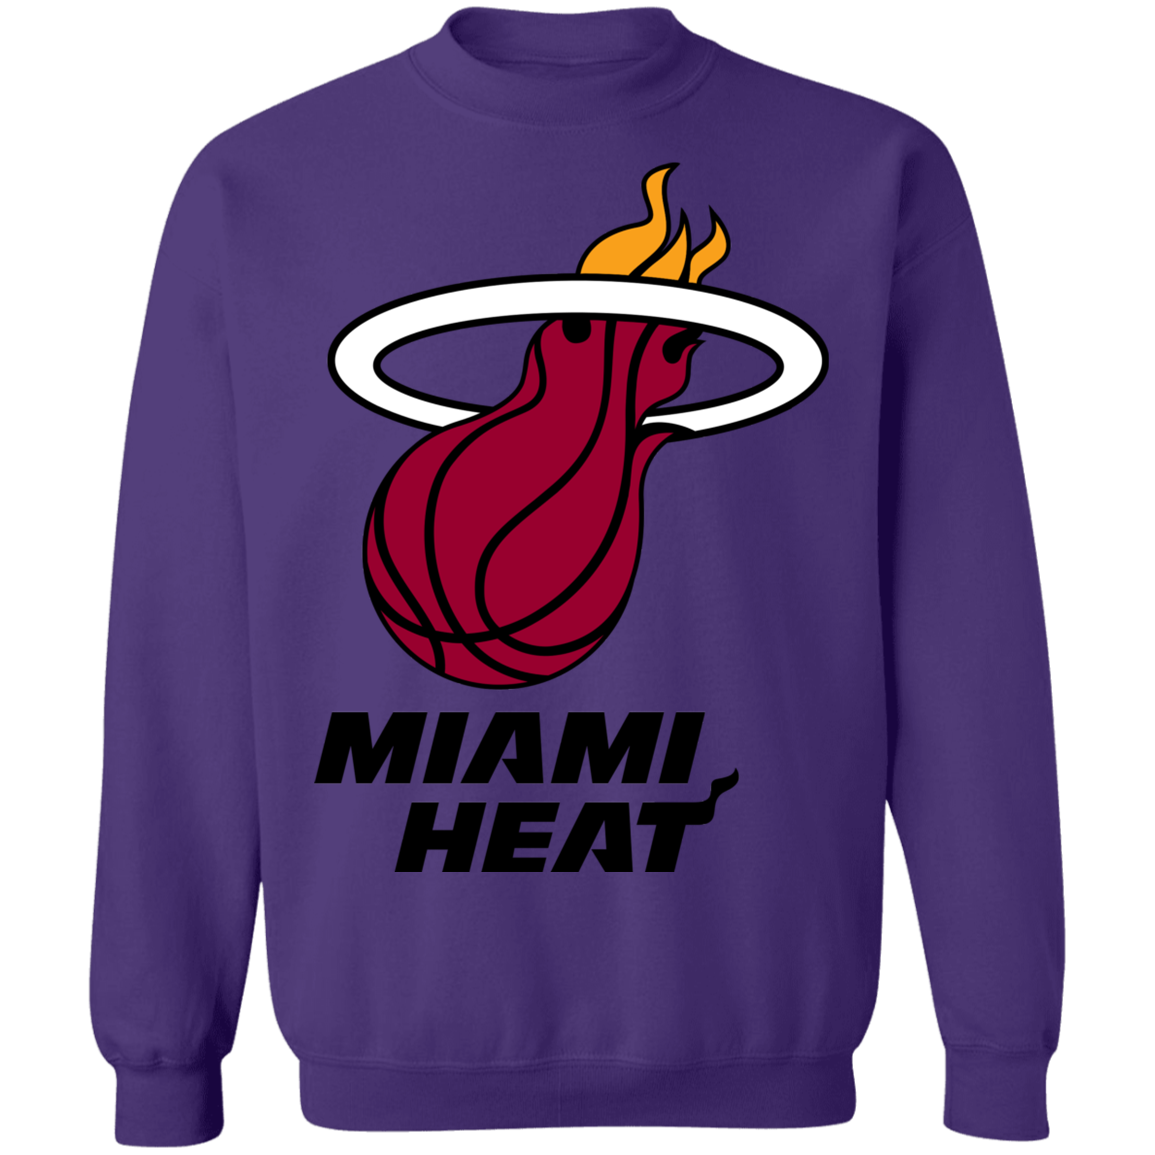 Miami Heat Logo Crewneck Sweatshirt - Happy Spring Tee